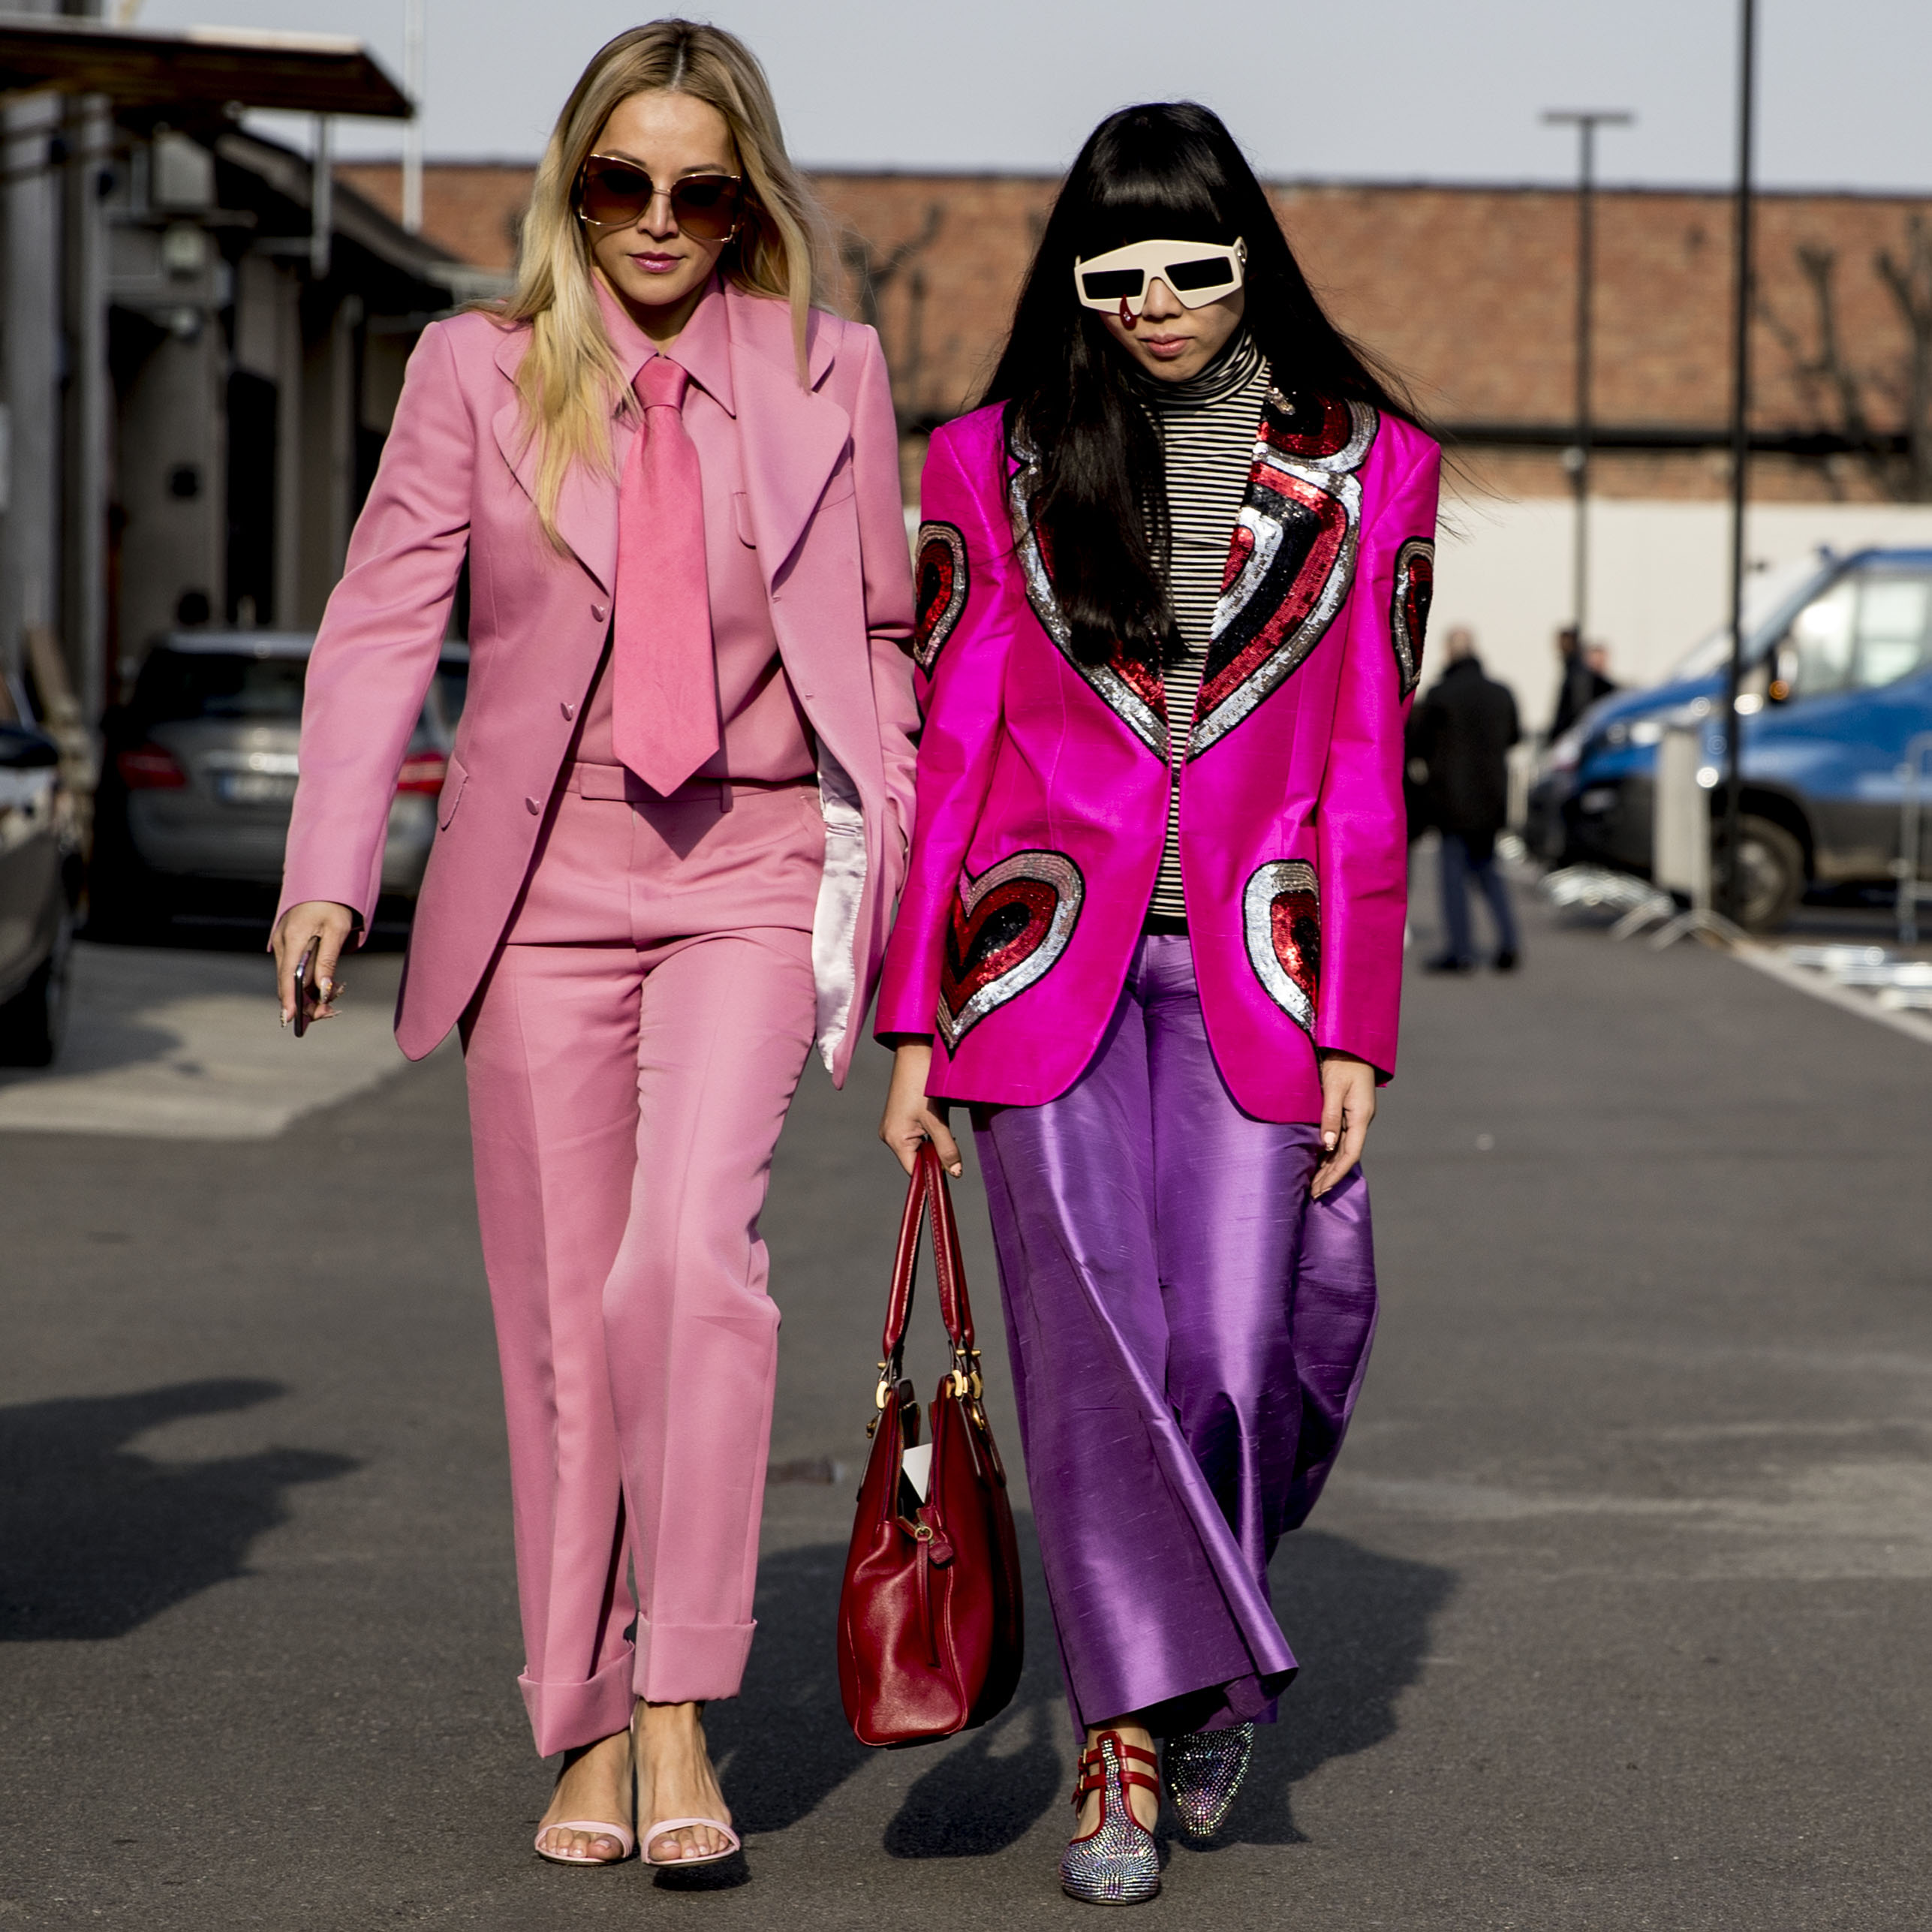 Semaine de mode de Milan: 50 looks de rue qui ont volé la vedette!